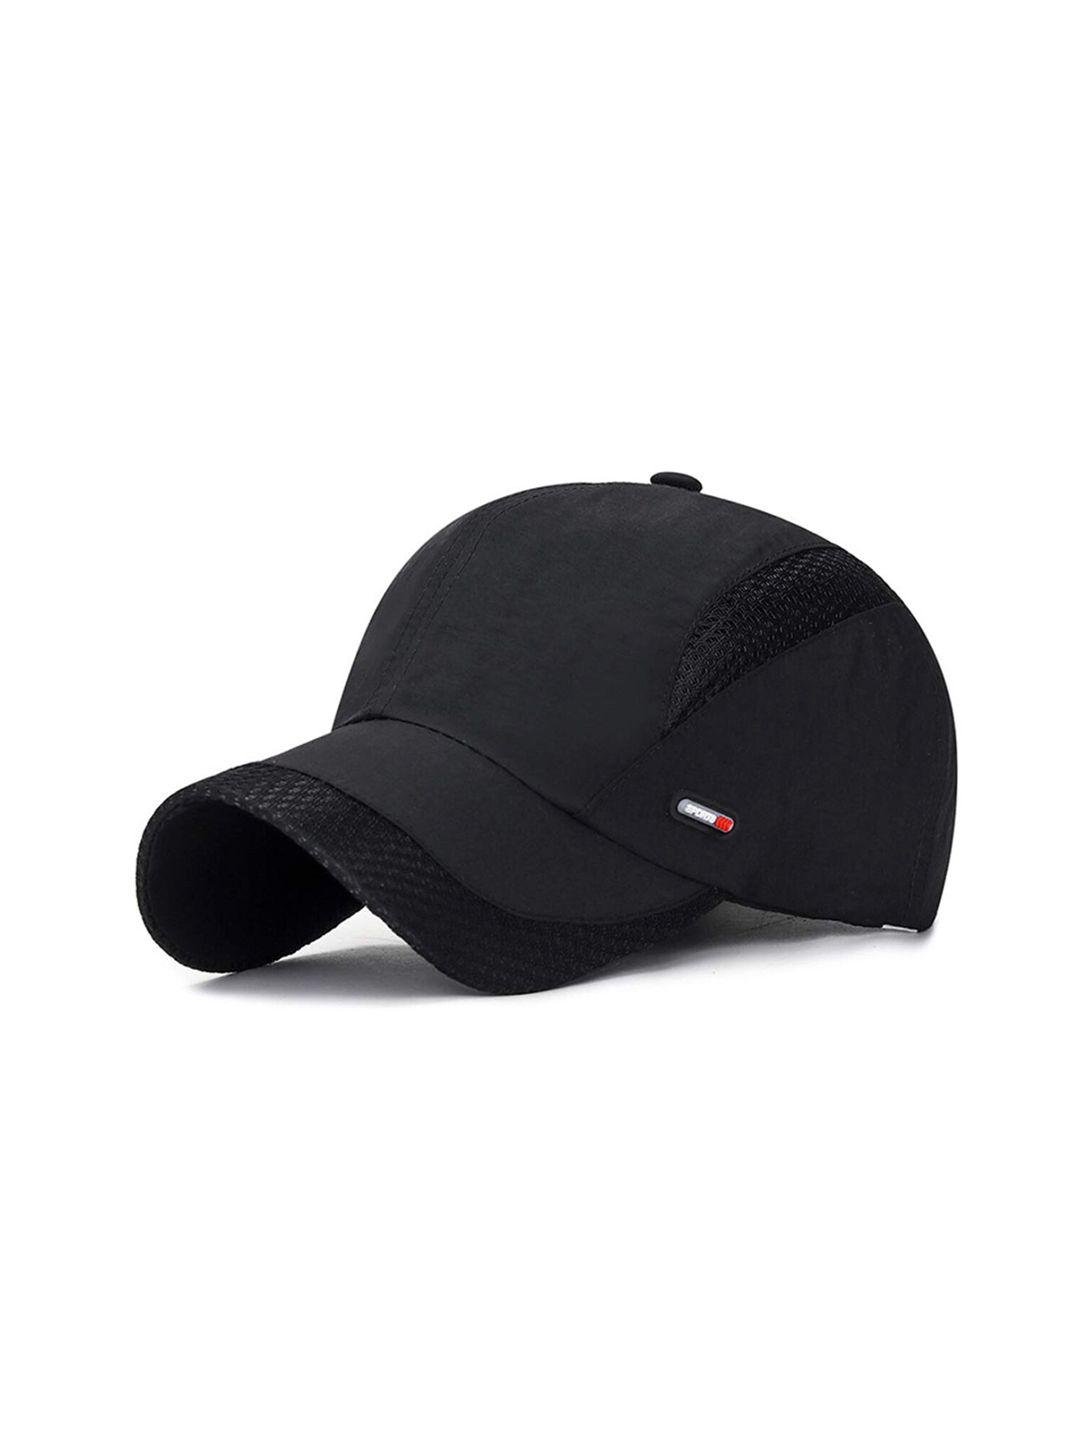 isweven-self-design-lightweight-baseball-cap